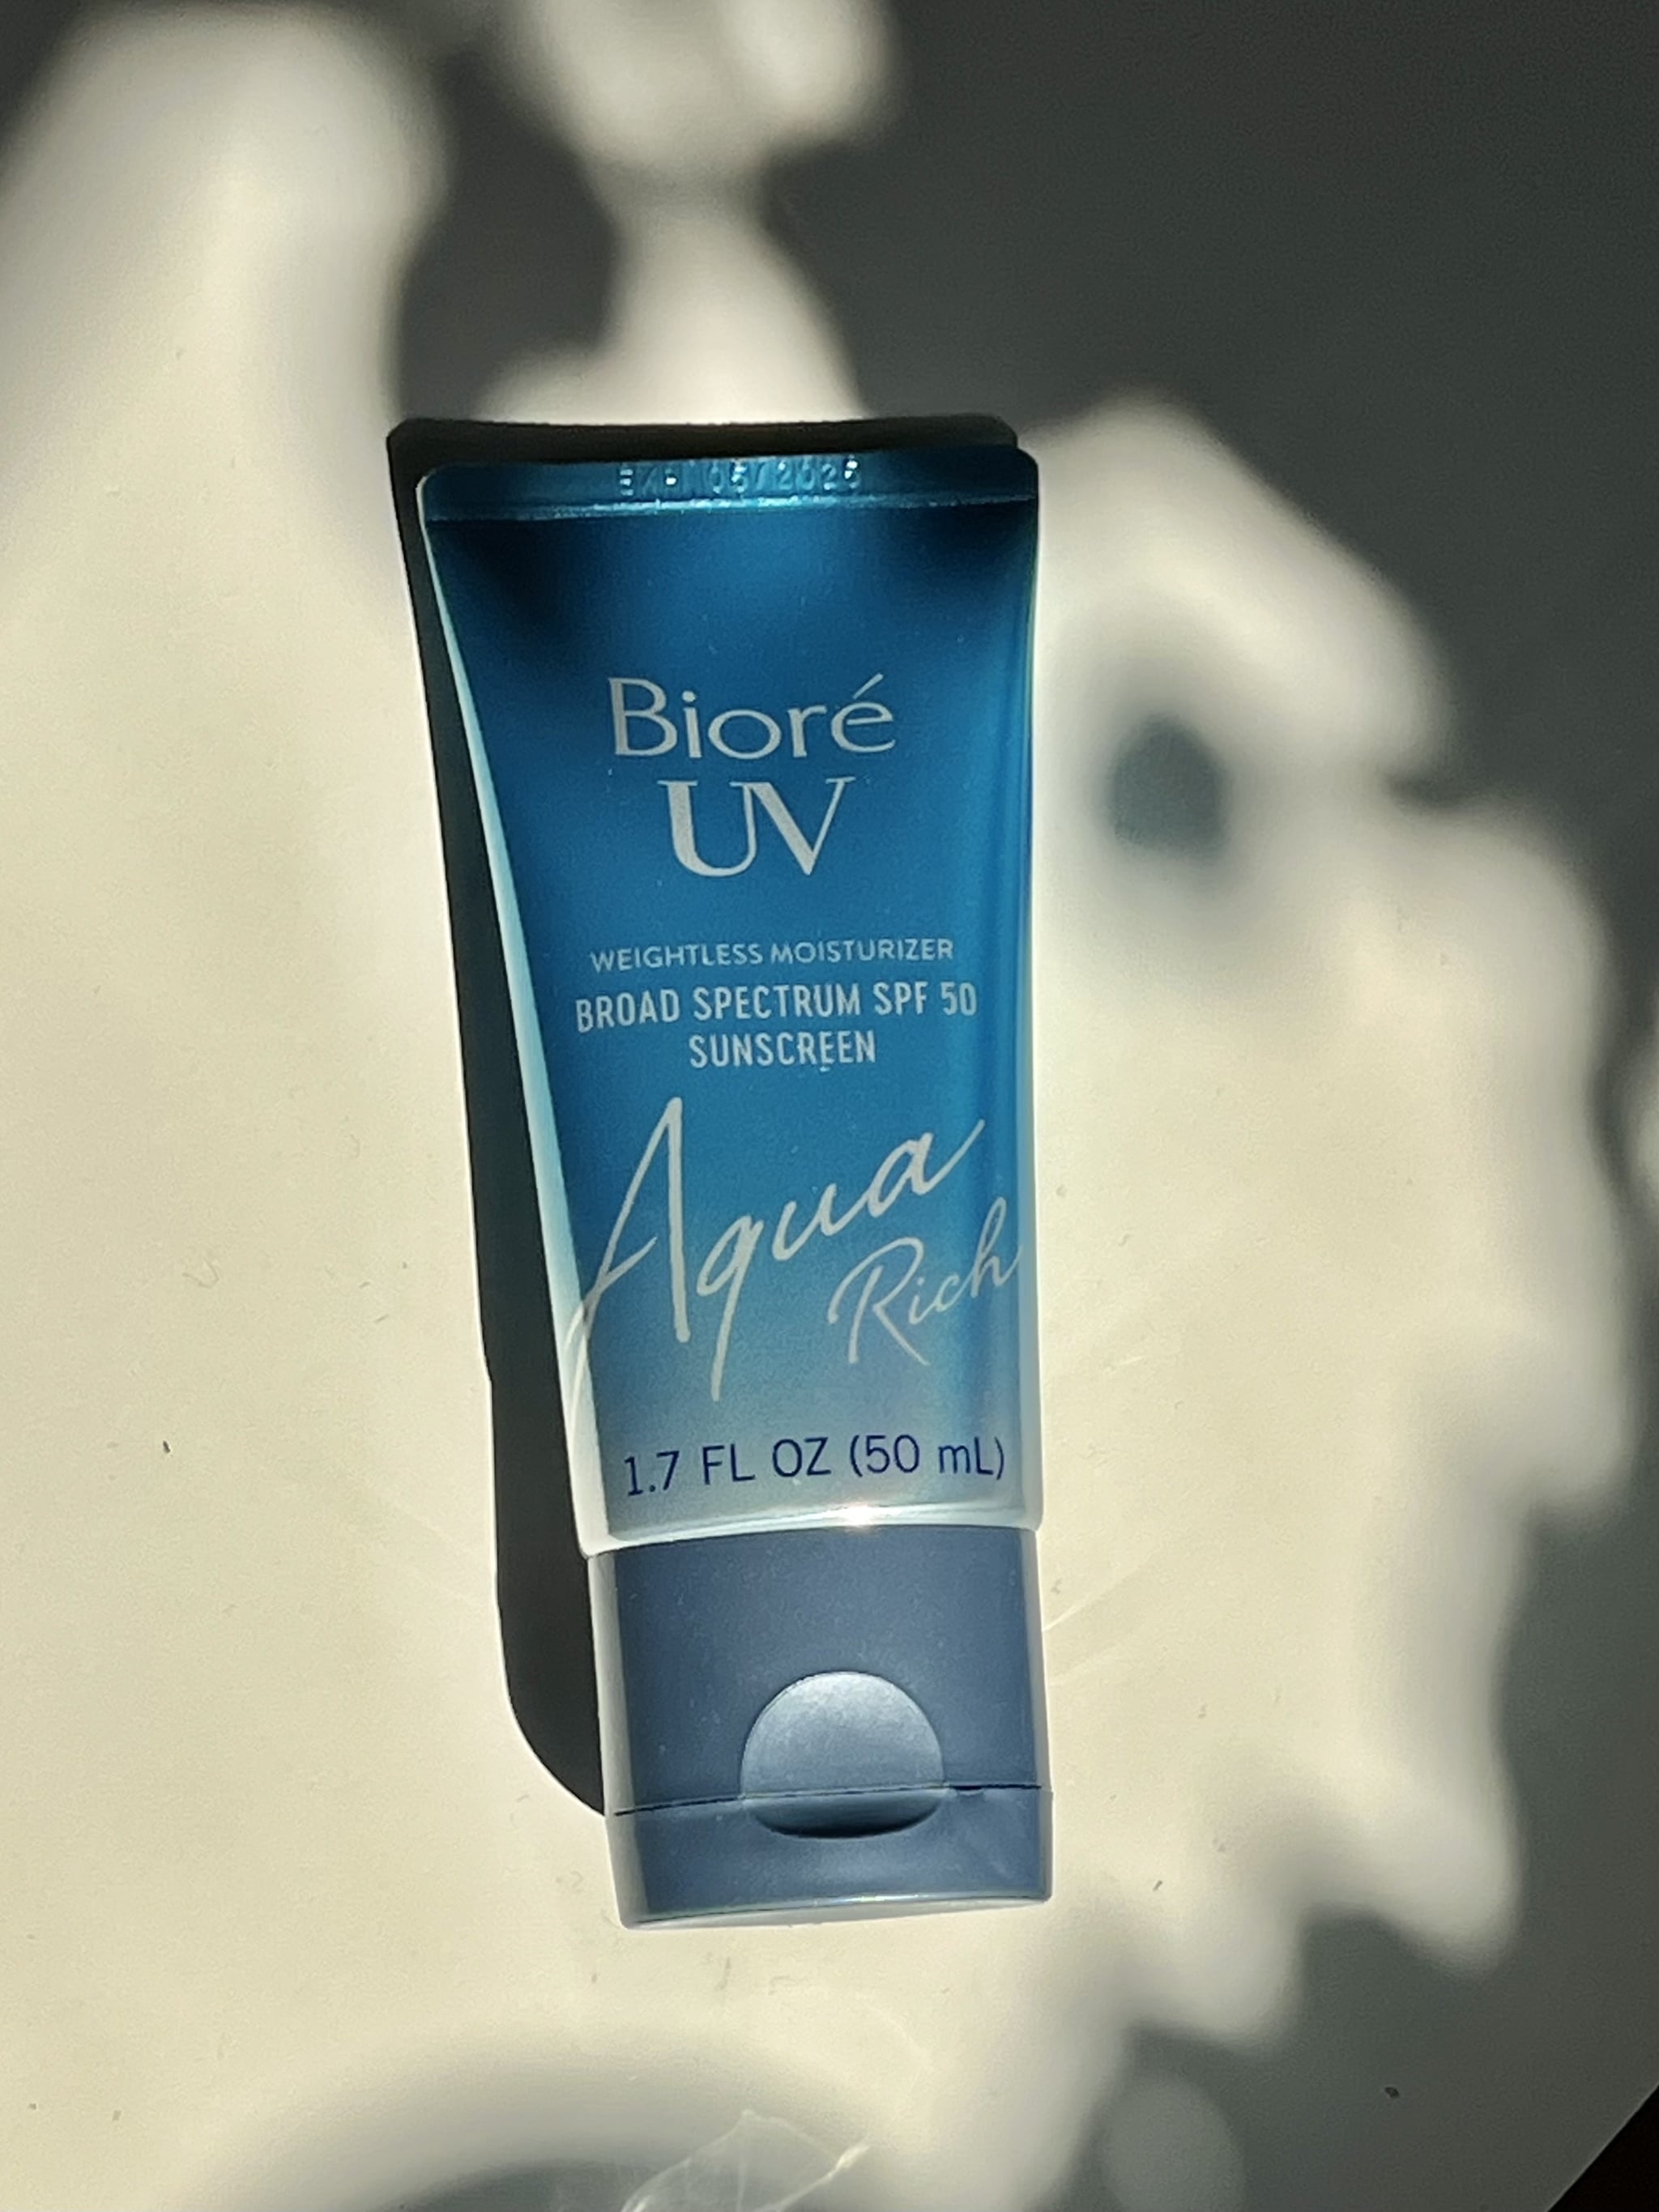 The Bioré UV Aqua Rich Sunscreen SPF 50.